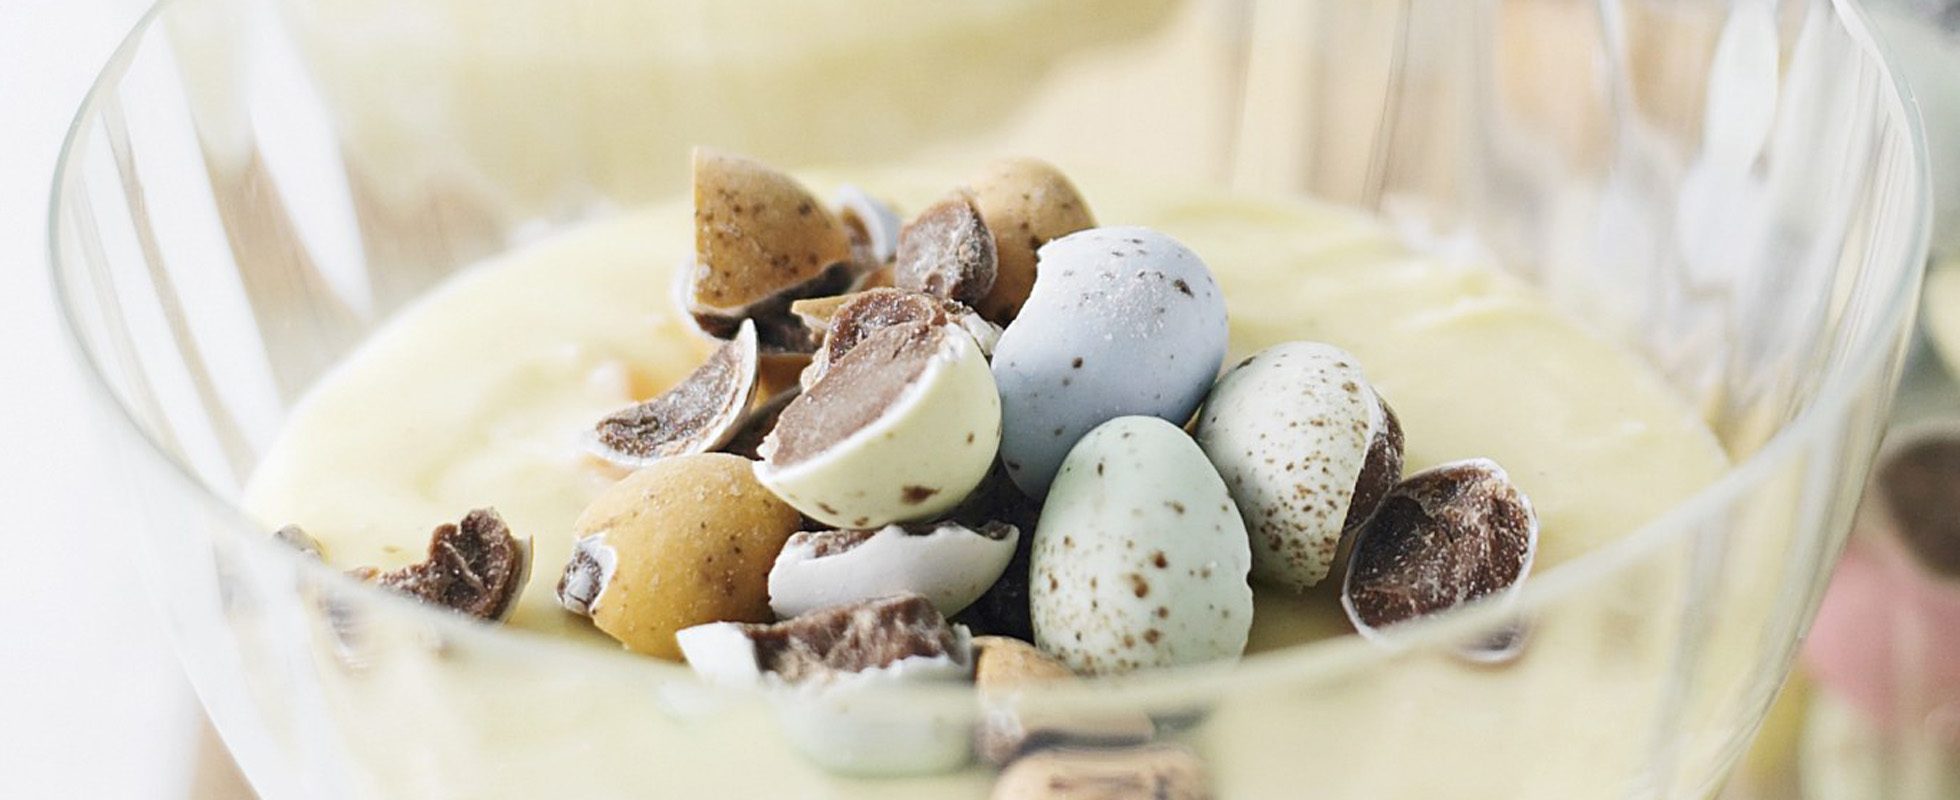 Mousse de ciocolată albă cu Mini Ouă zdrobite